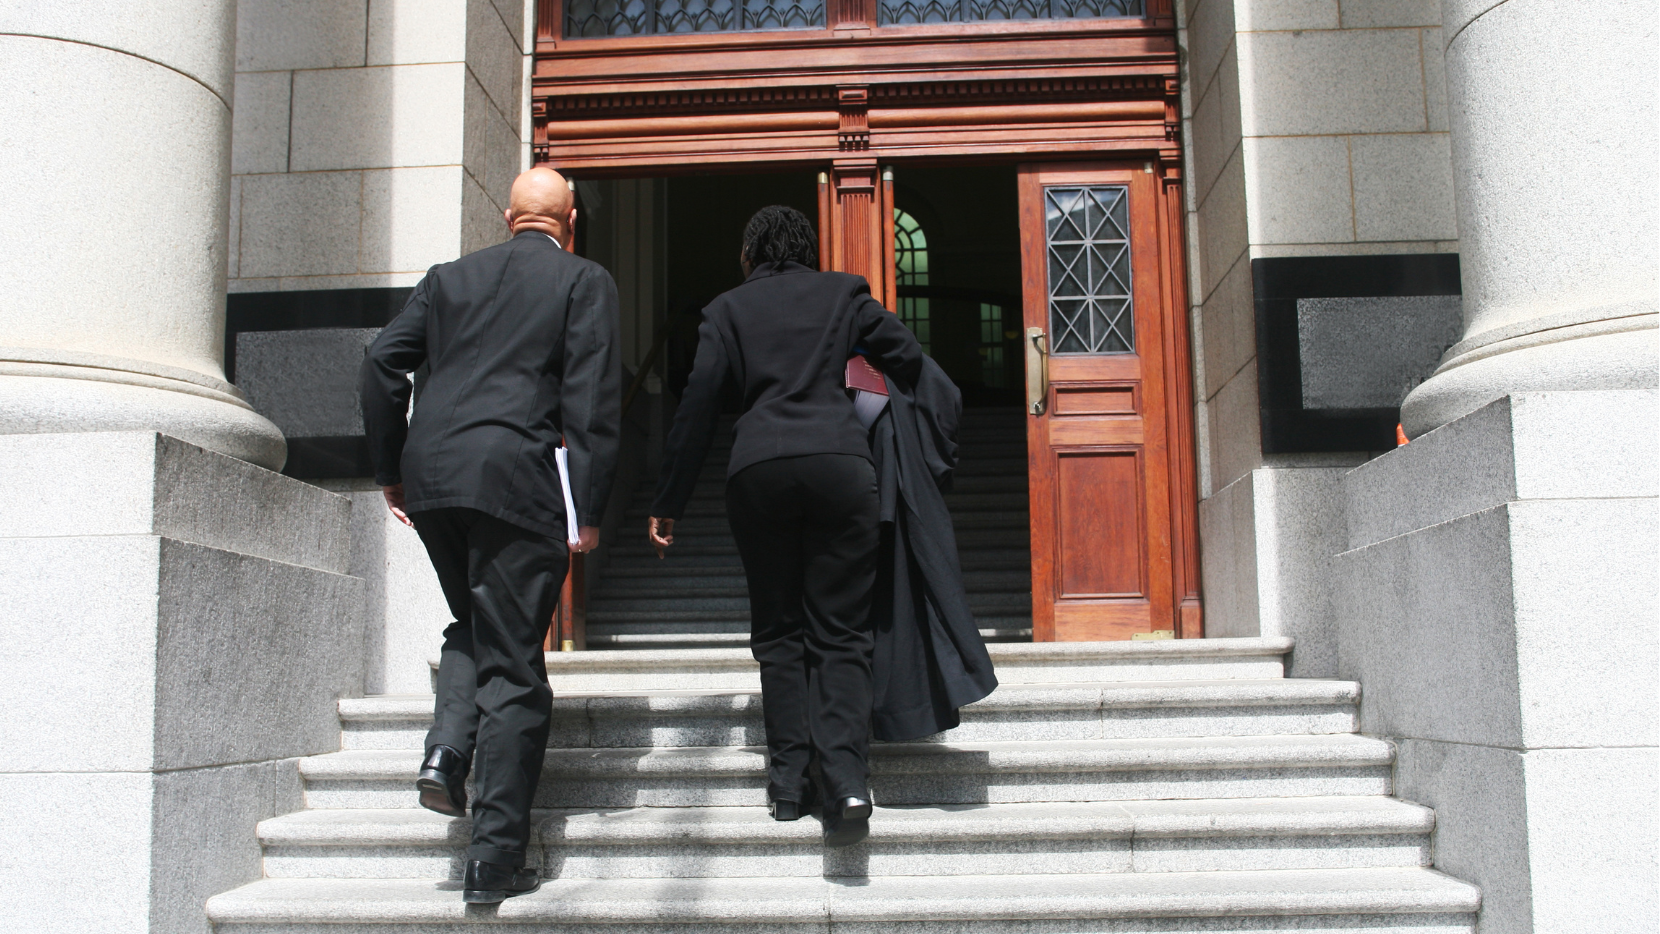 Two people in suits walking towards a court door.